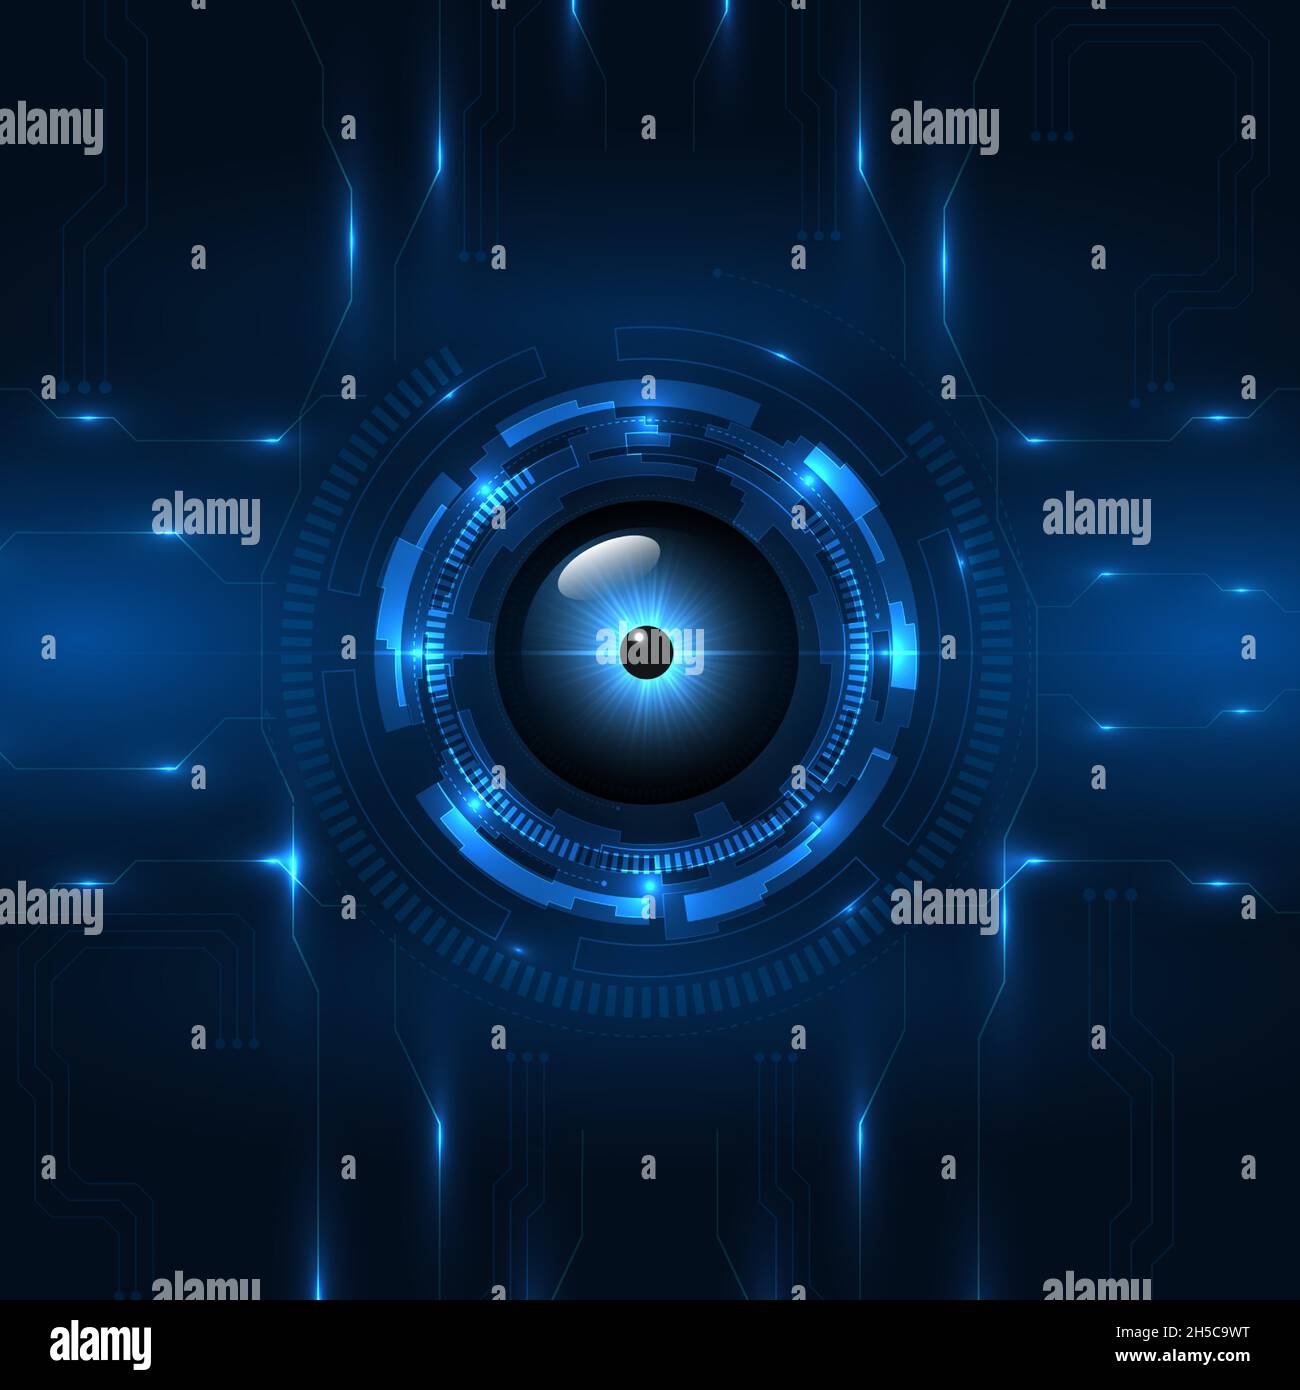 Blue Cyber Eye Platine digitale Technologie futuristische Konzept Hintergrund. High-Tech-Konzept der elektronischen Hauptplatine. Technologien für dunkelblaue Augen Stock Vektor